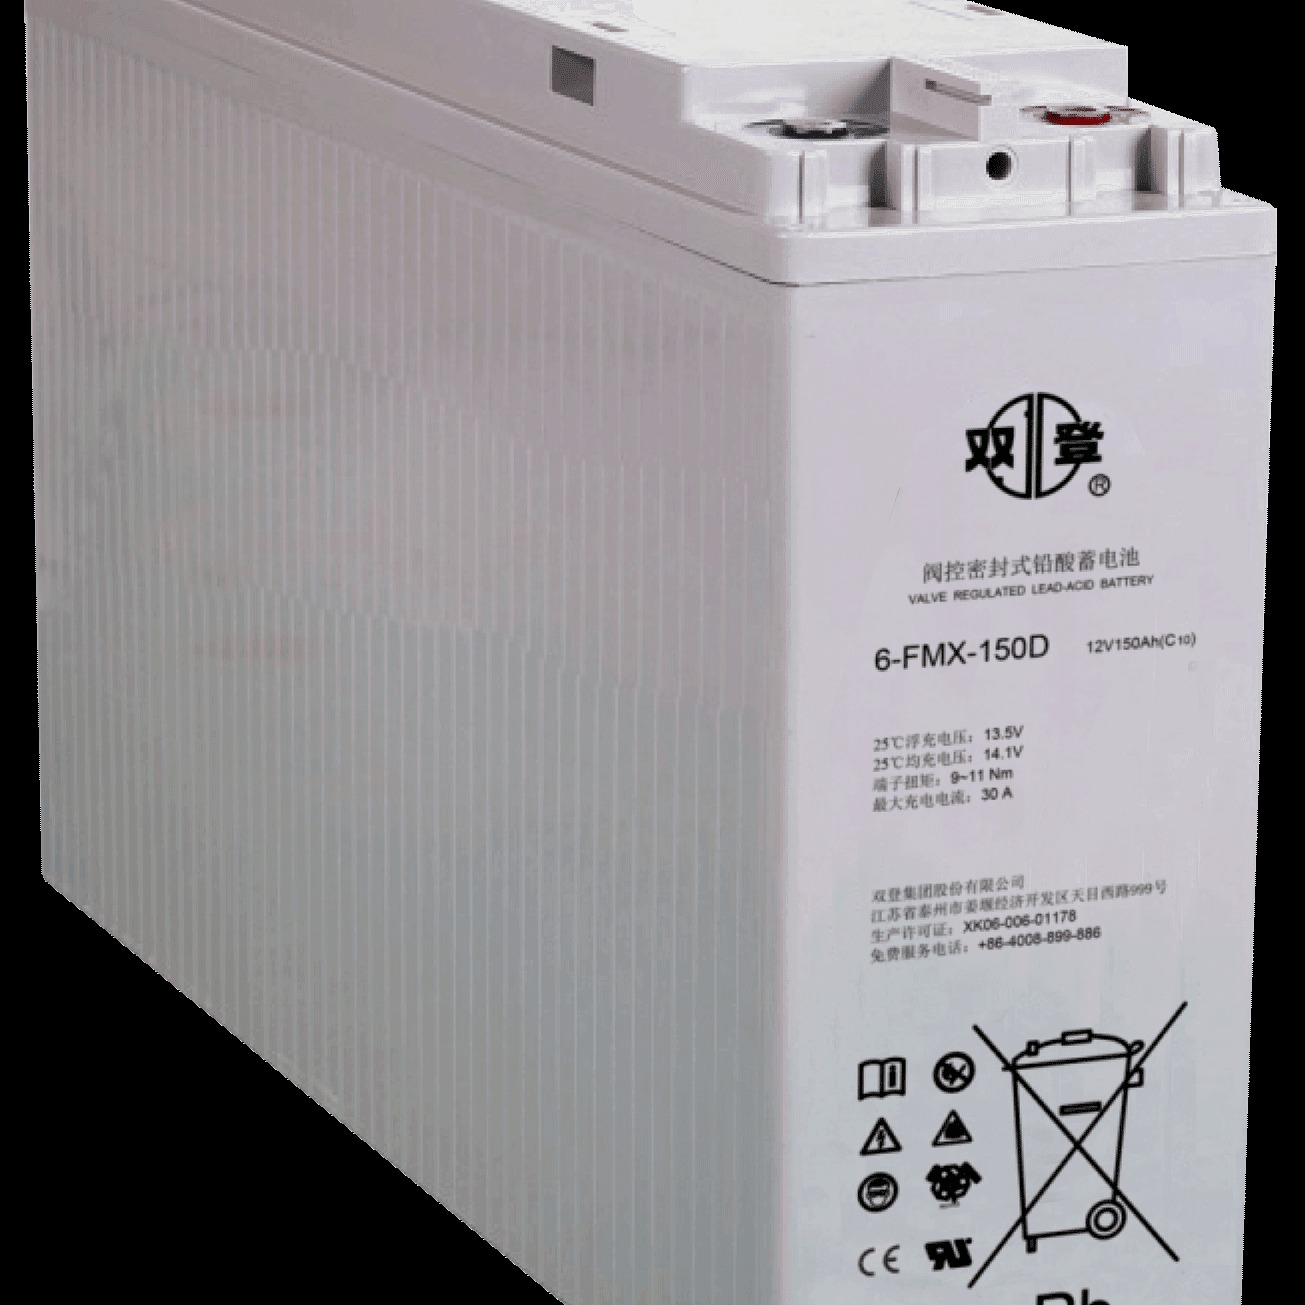 双登蓄电池6-FMX-150D 阀控密封式铅酸蓄电池12V150AH 通信 基站 UPS电源专用 现货供应